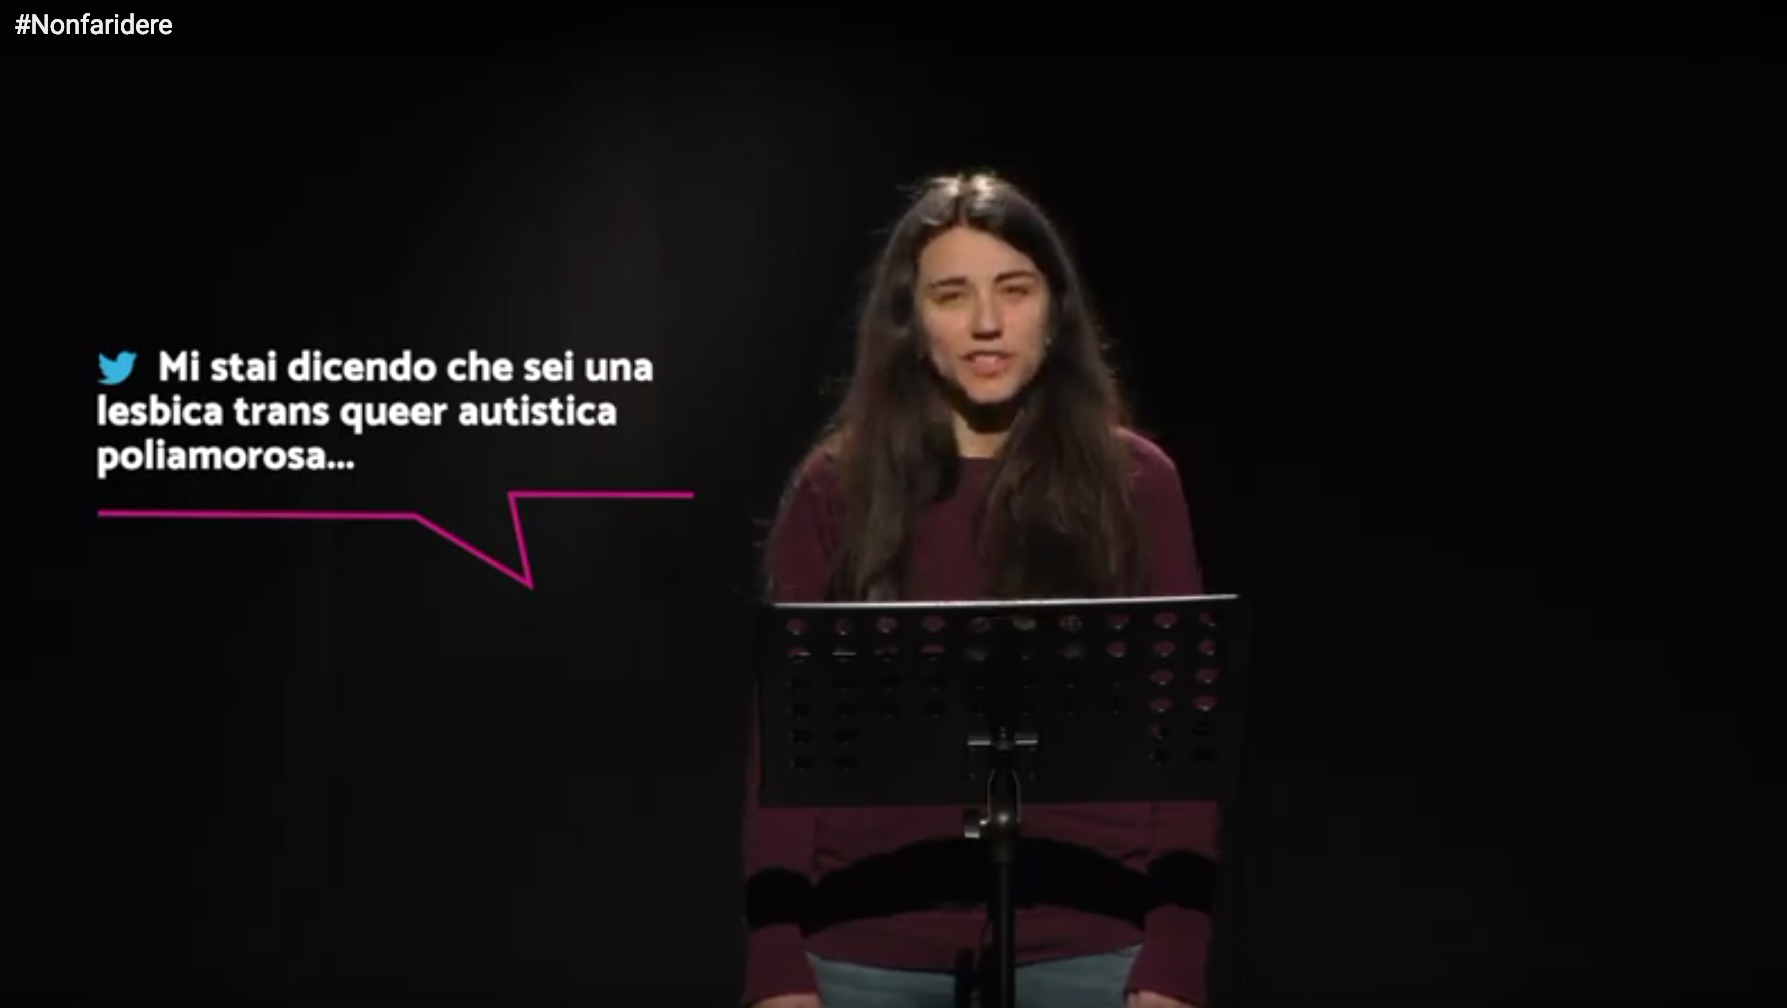 “Non fa ridere”: online il video della campagna di Arcigay per contrastare l’hate speech